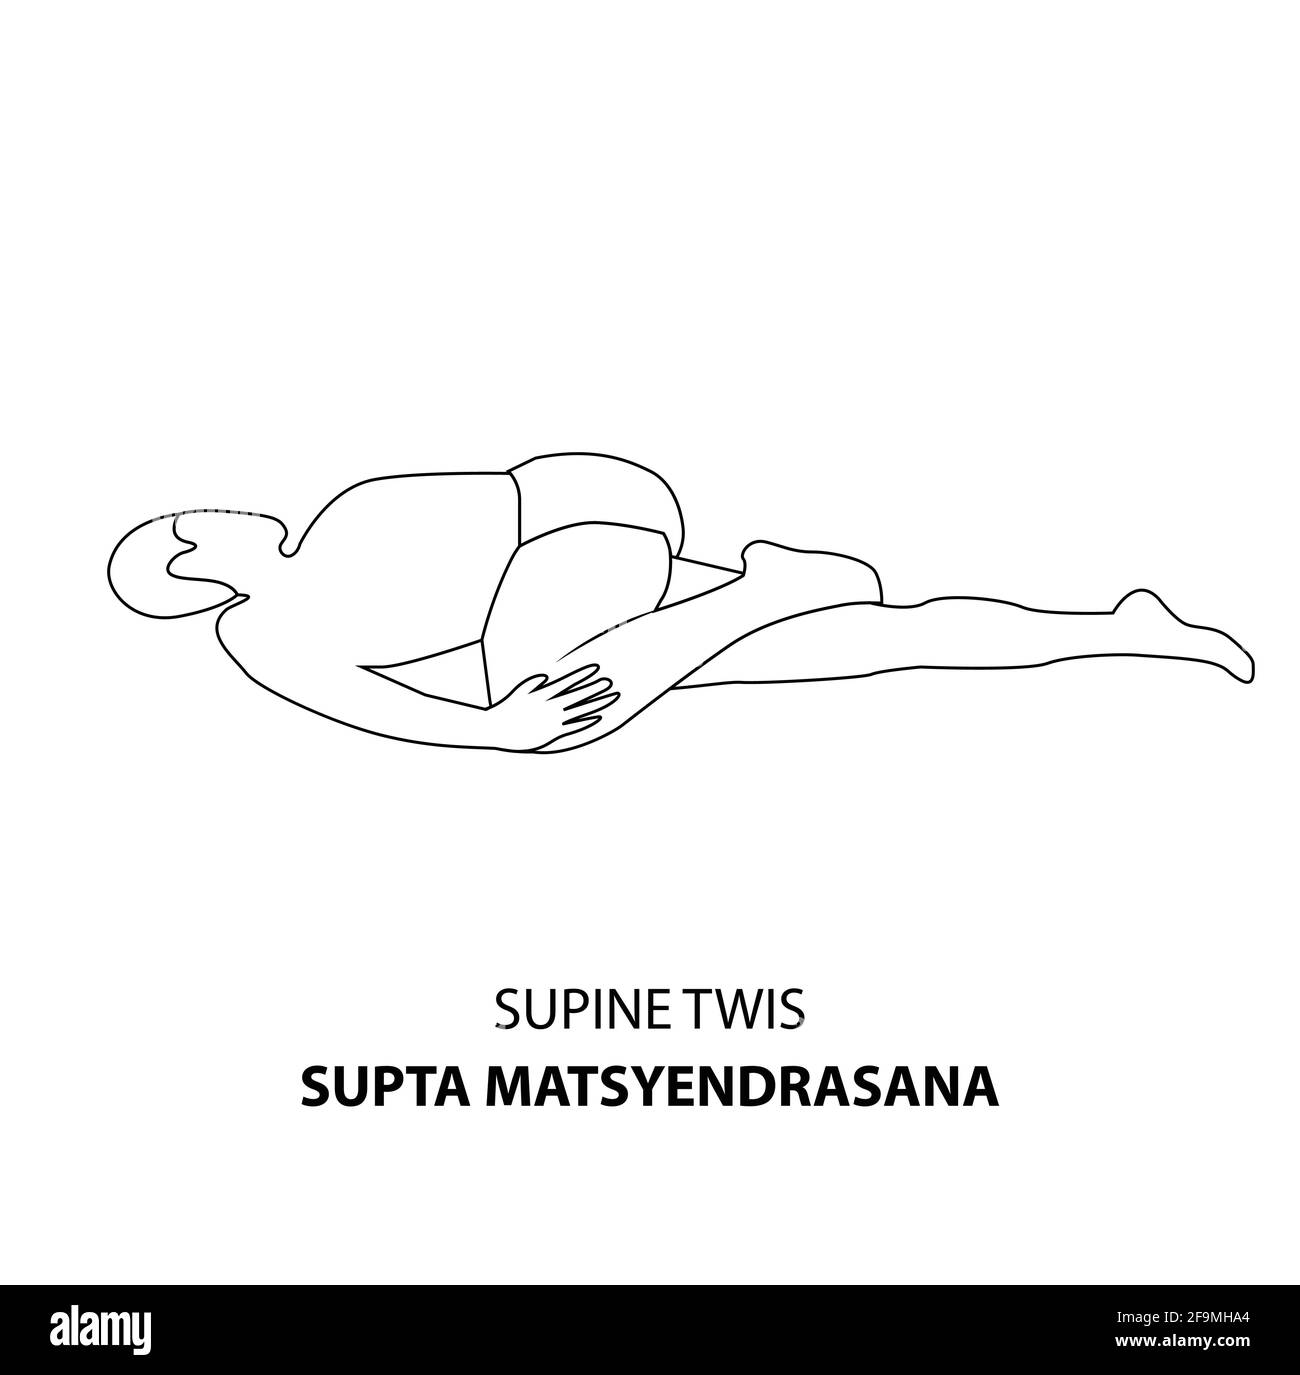 Homme pratiquant le yoga pose isolé contour Illustration. Homme allongé sur le sol en décubitus dorsal ou en décubitus dorsal, icône de la ligne Yoga Asana Illustration de Vecteur